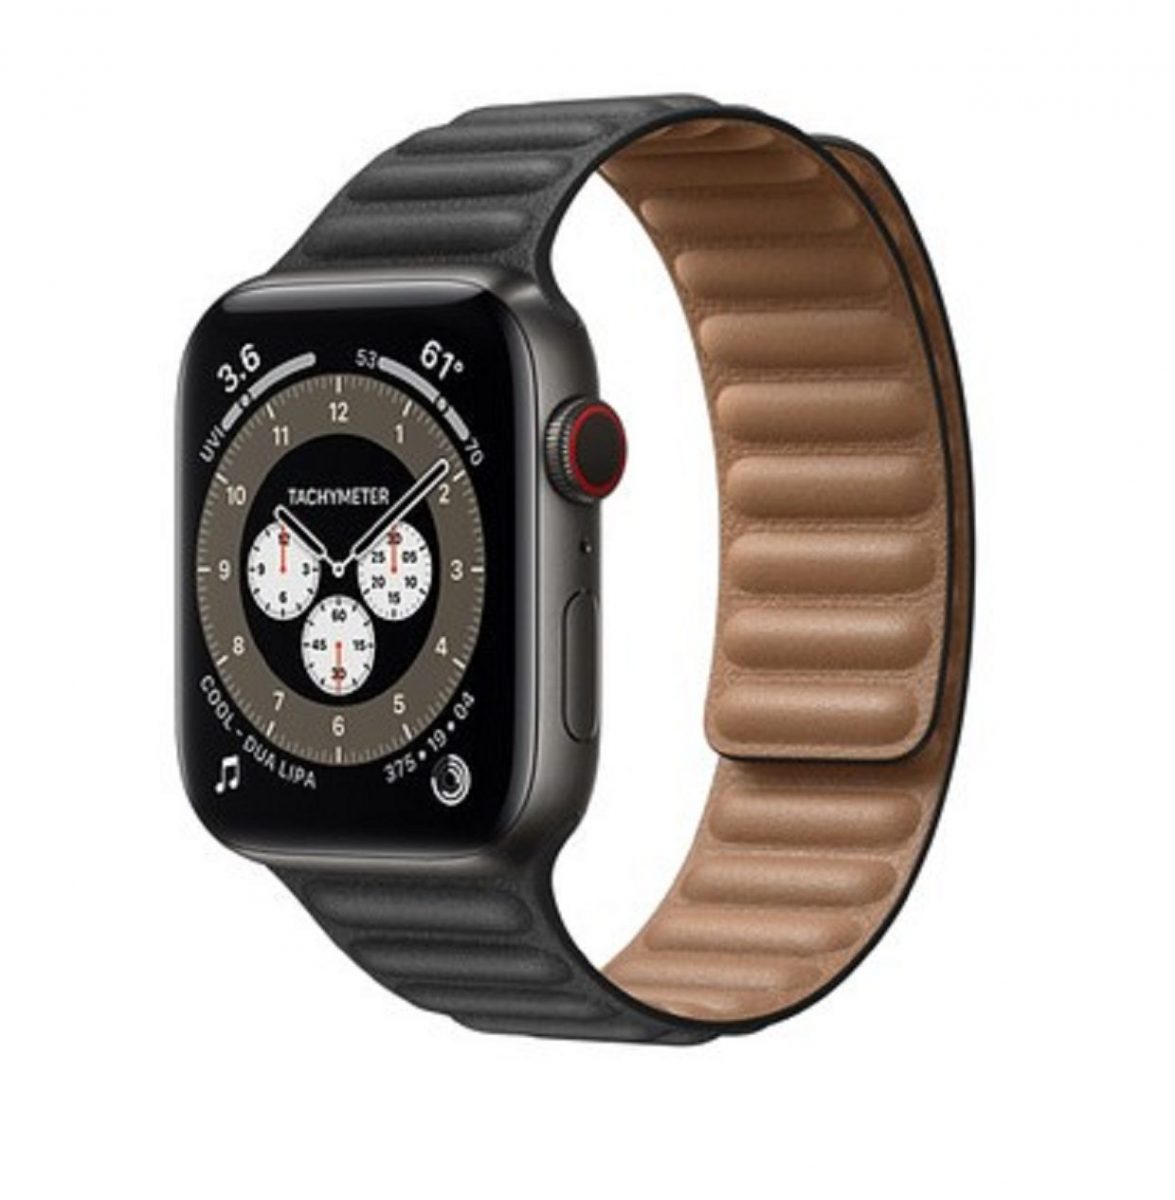 Wat is er aan de hand met de Apple Watch titanium?